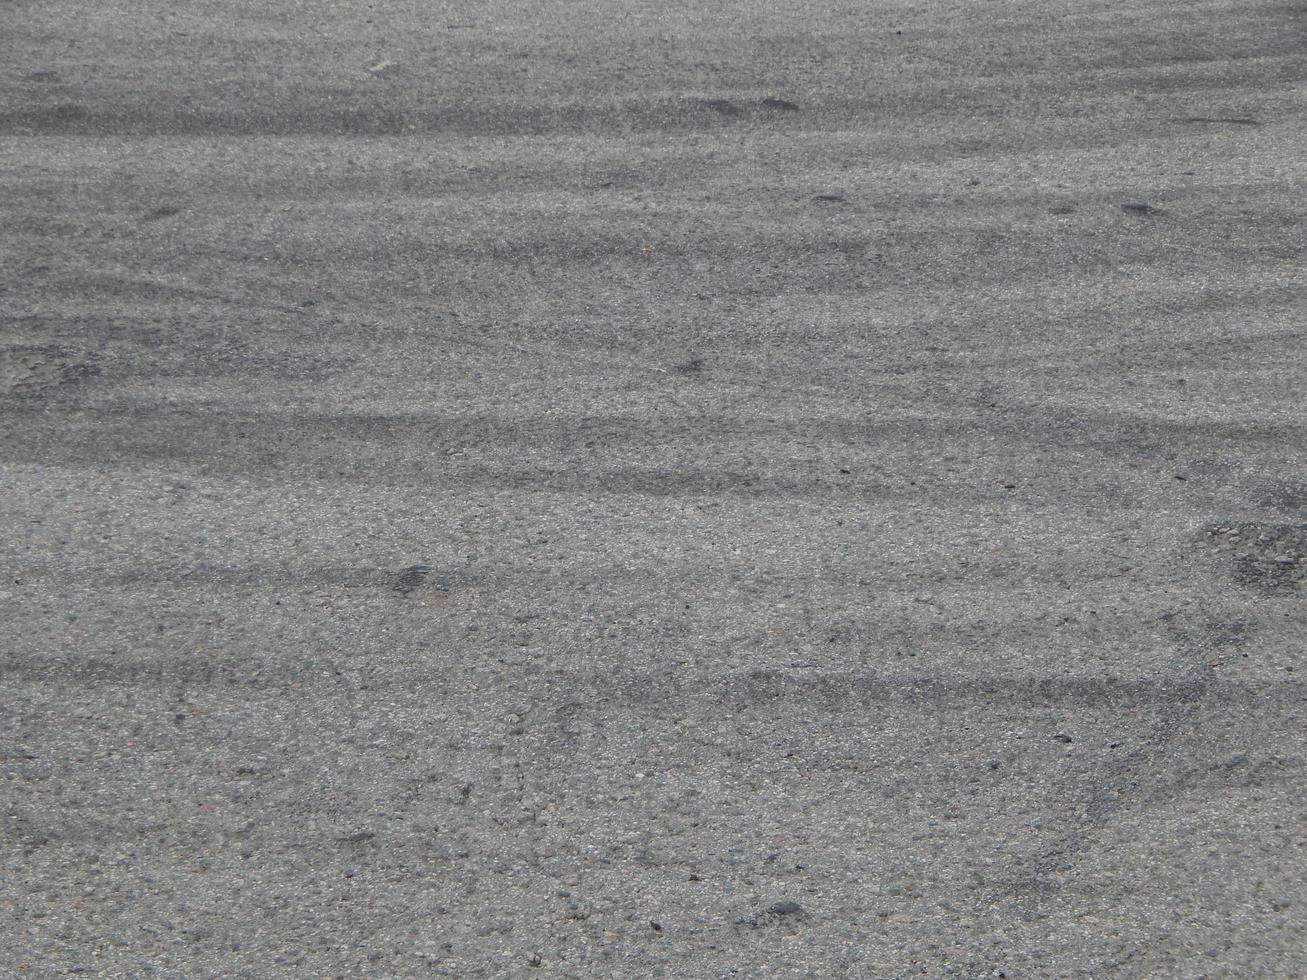 autobandvlekken op asfalt racekaarten foto